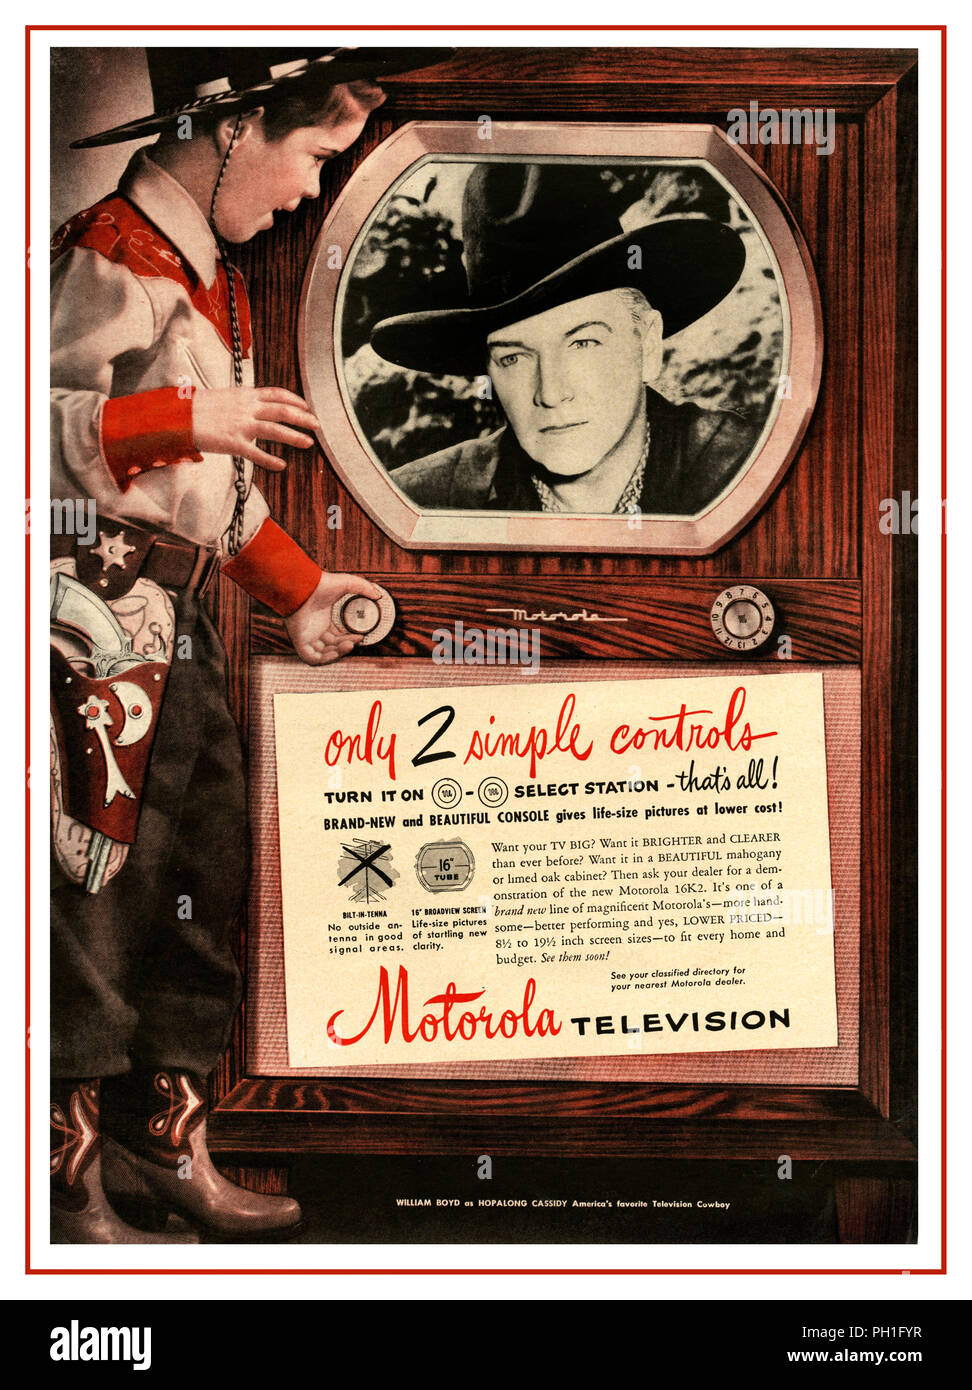 Vintage anni cinquanta TV USA American premere pubblicità per un pavimento mobile Motorola televisore con giovane ragazzo in vestito da cowboy con la pistola nella custodia e il suo preferito American cowboy star Hopalong Cassidy sullo schermo del televisore Foto Stock